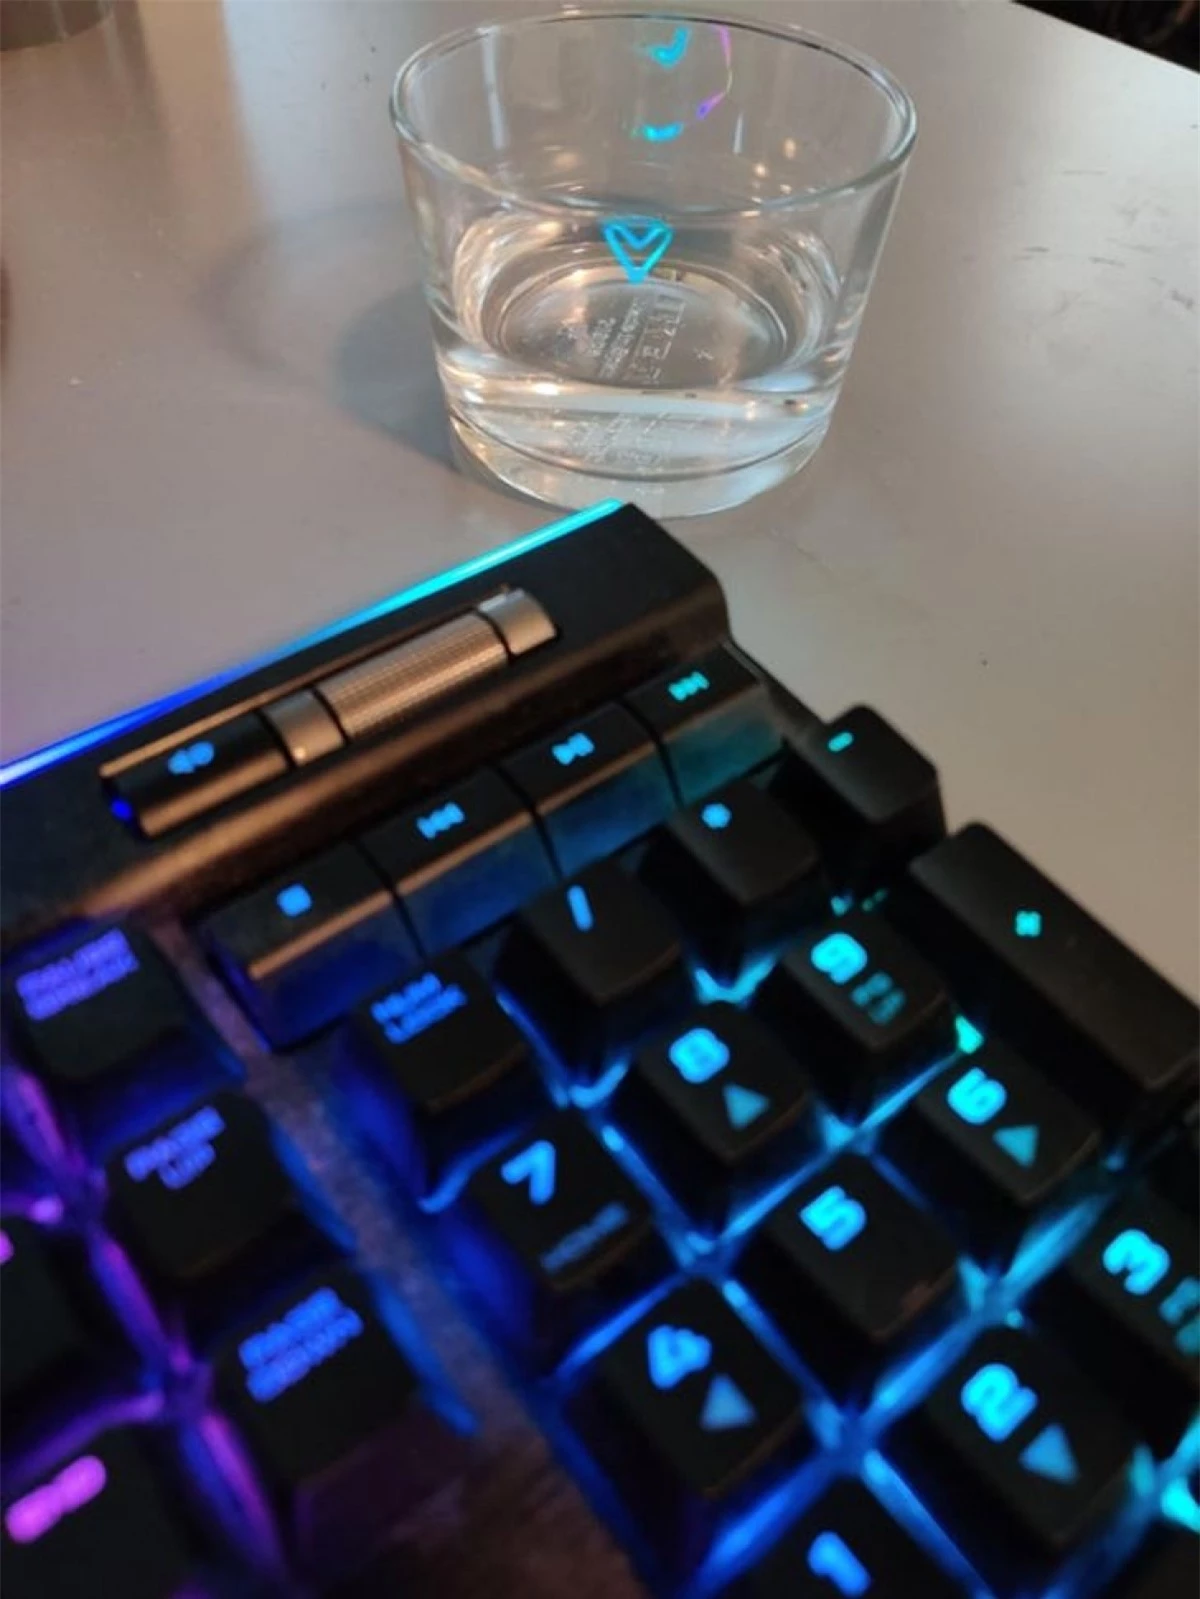 Ánh đèn từ bàn phím máy tính tạo thành hình trái tim nhỏ xinh trên chiếc cốc uống nước.